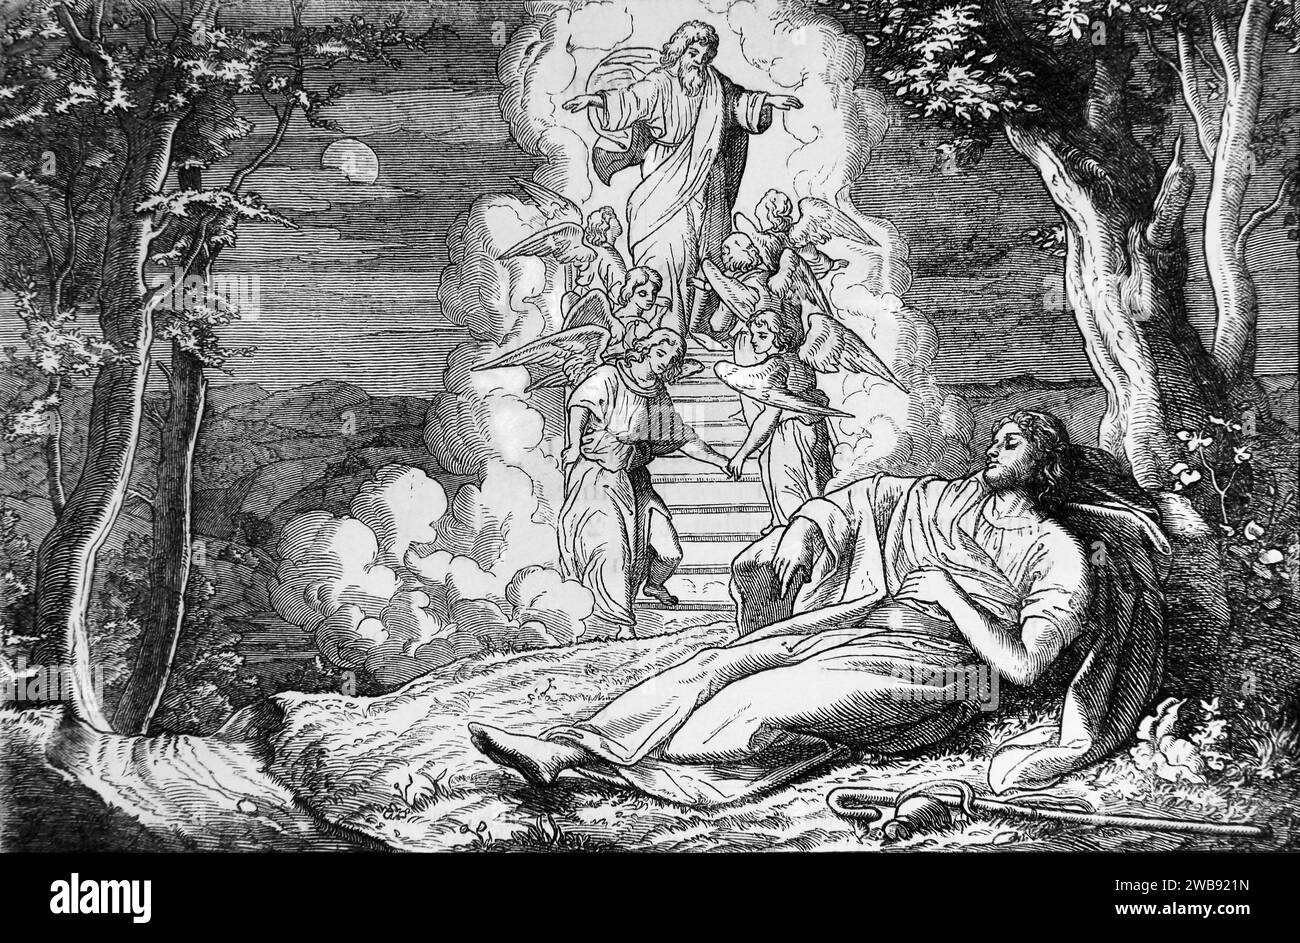 Illustration du rêve de Jacob - pendant son sommeil Jacob a un rêve de Dieu, il voit des anges monter et descendre un escalier atteignant le ciel (Genèse) Banque D'Images